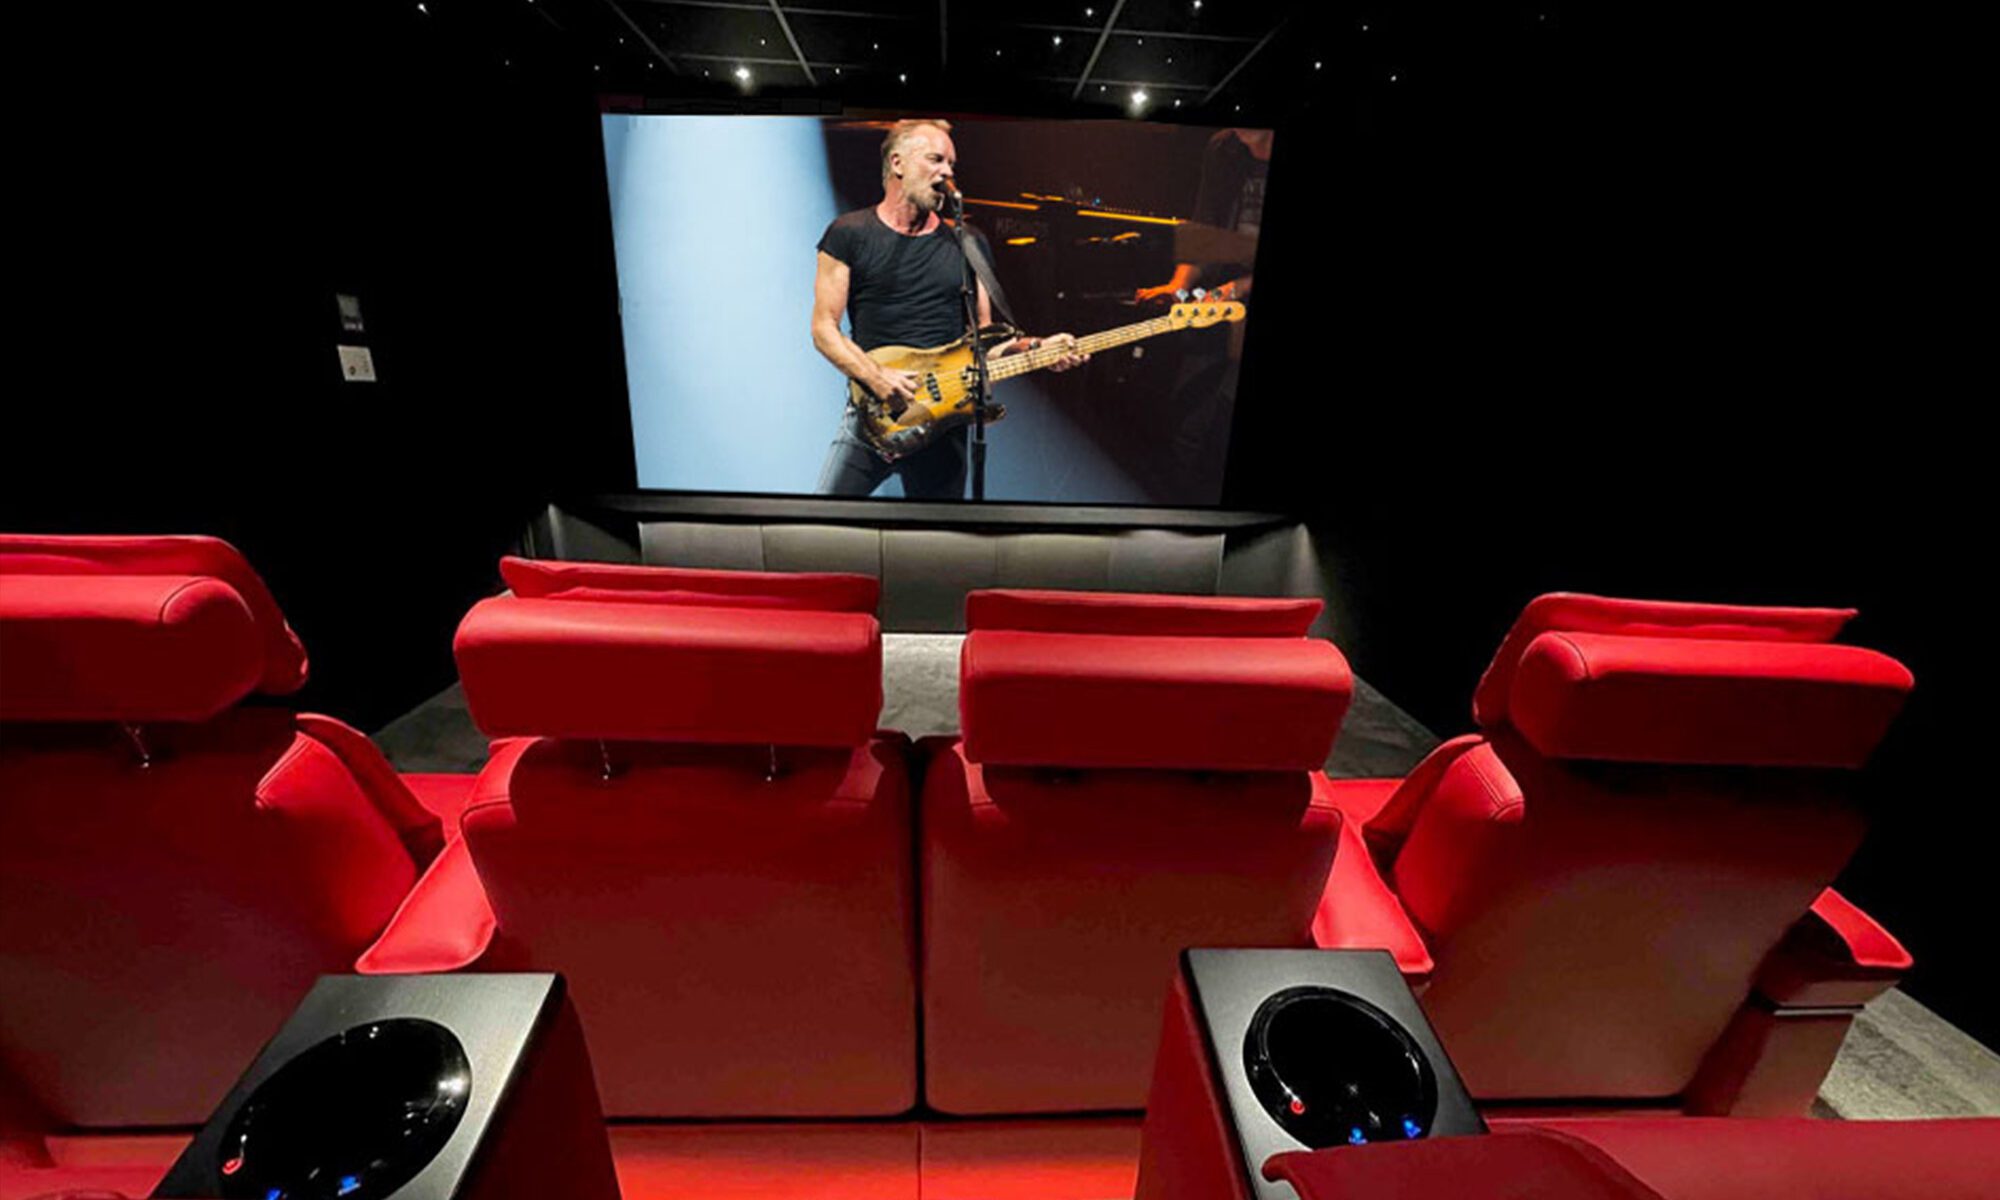 Salle de cinéma privée 8 places 24,5m4 avec fauteuils en tissu rouge, ciel étoilé, spots, meuble chêne sur mesure sous l'écran à Marseille